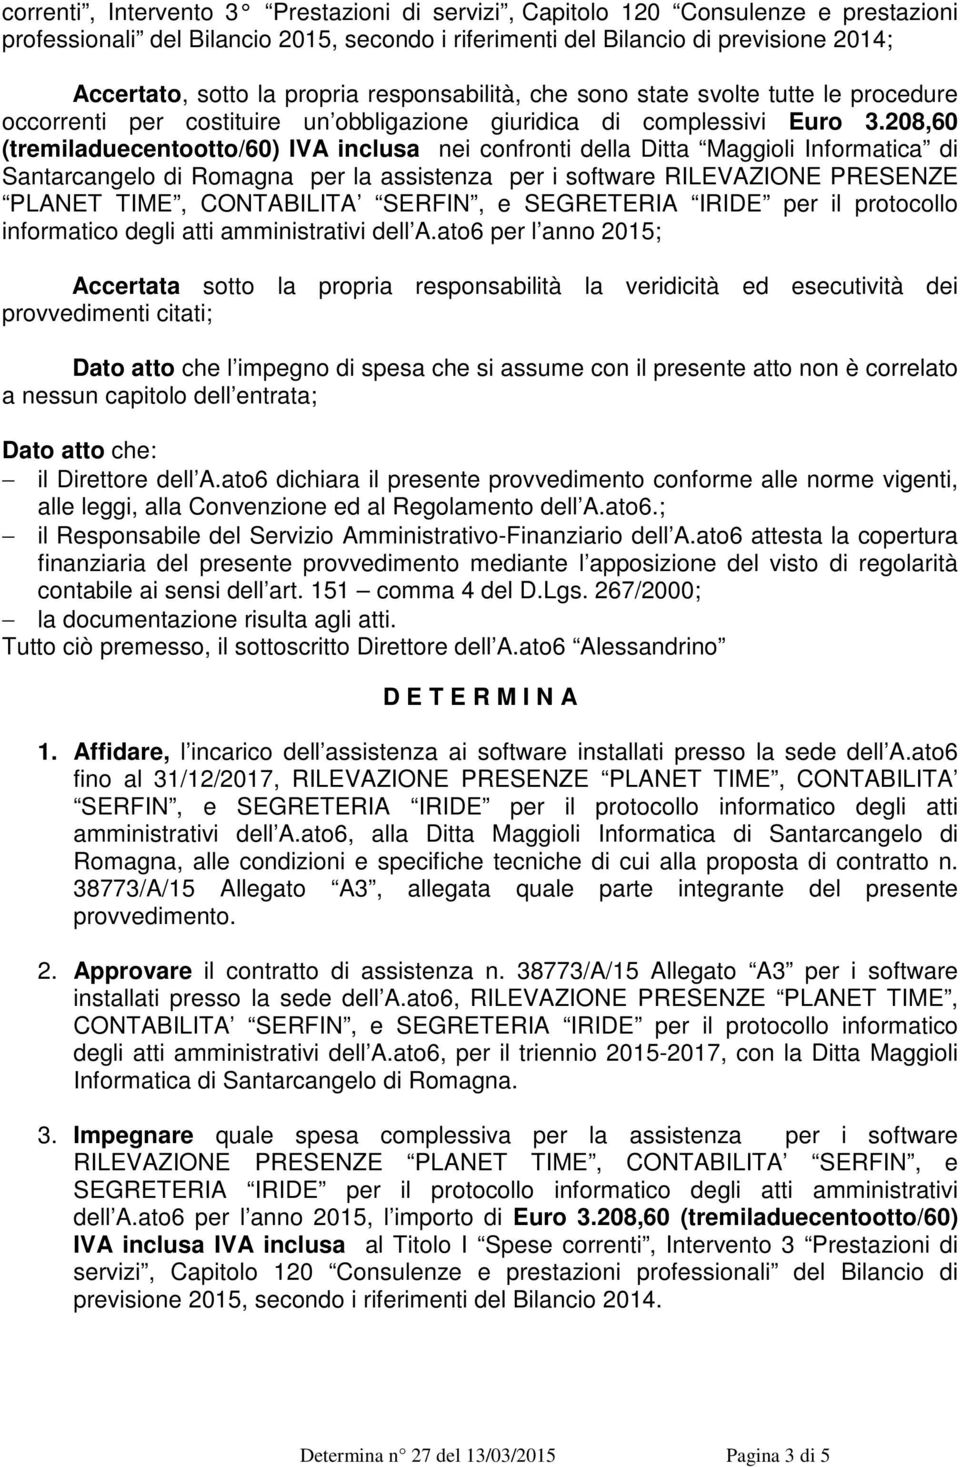 208,60 (tremiladuecentootto/60) IVA inclusa nei confronti della Ditta Maggioli Informatica di Santarcangelo di Romagna per la assistenza per i software RILEVAZIONE PRESENZE PLANET TIME, CONTABILITA